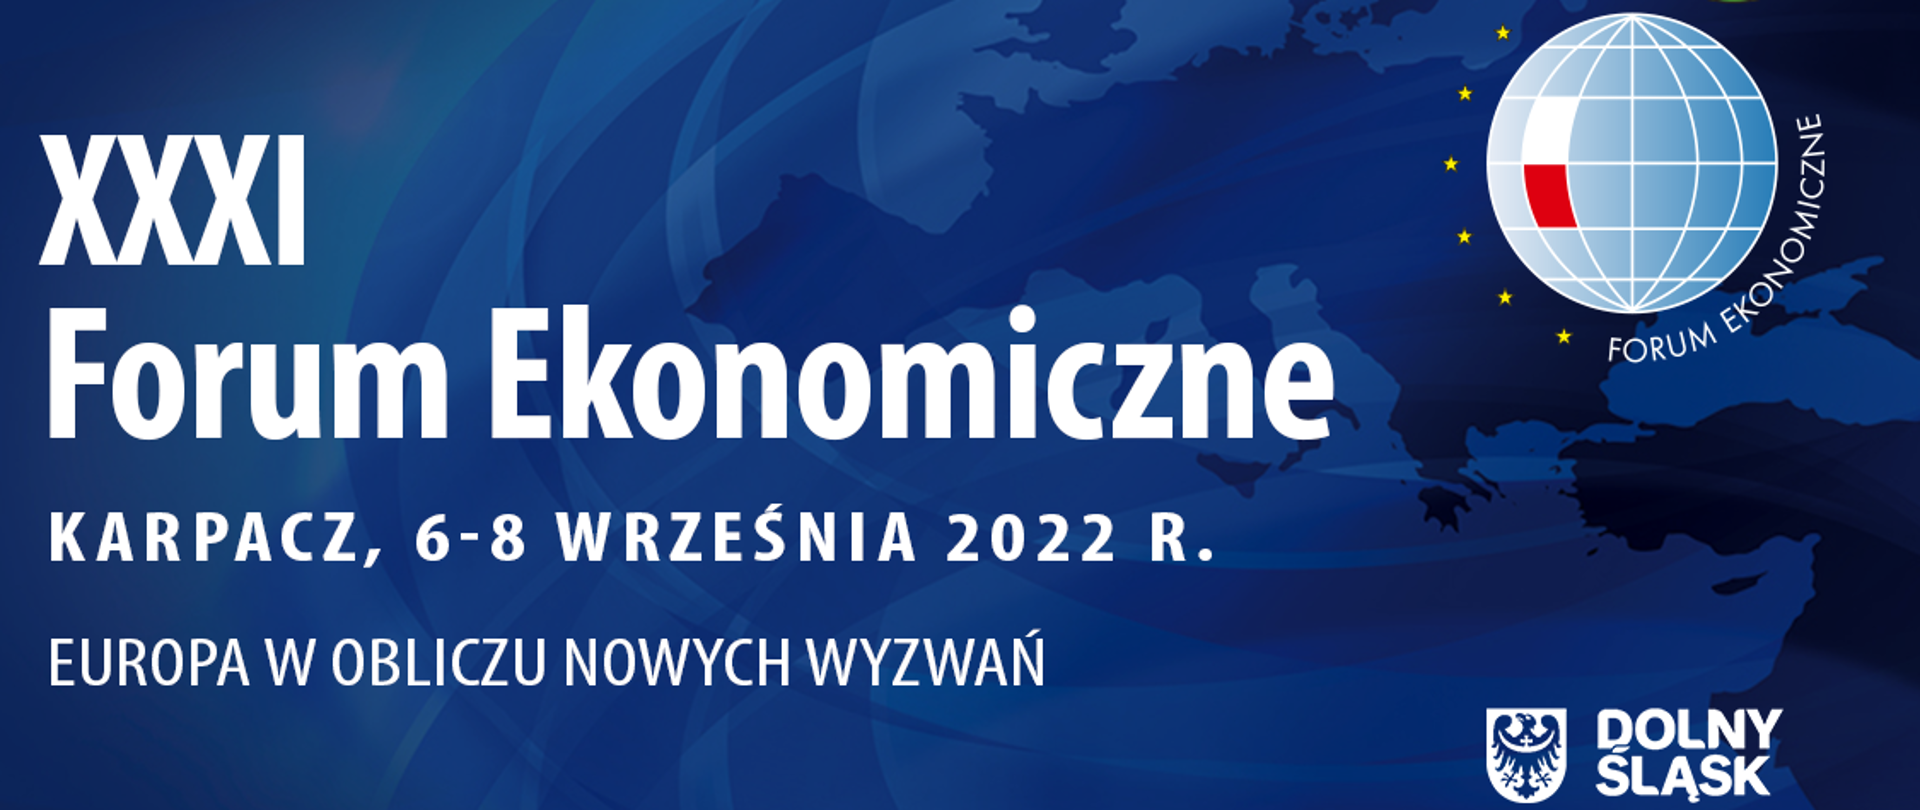 20220906_XXXI_Forum_Ekonomiczne_w_Karpaczu